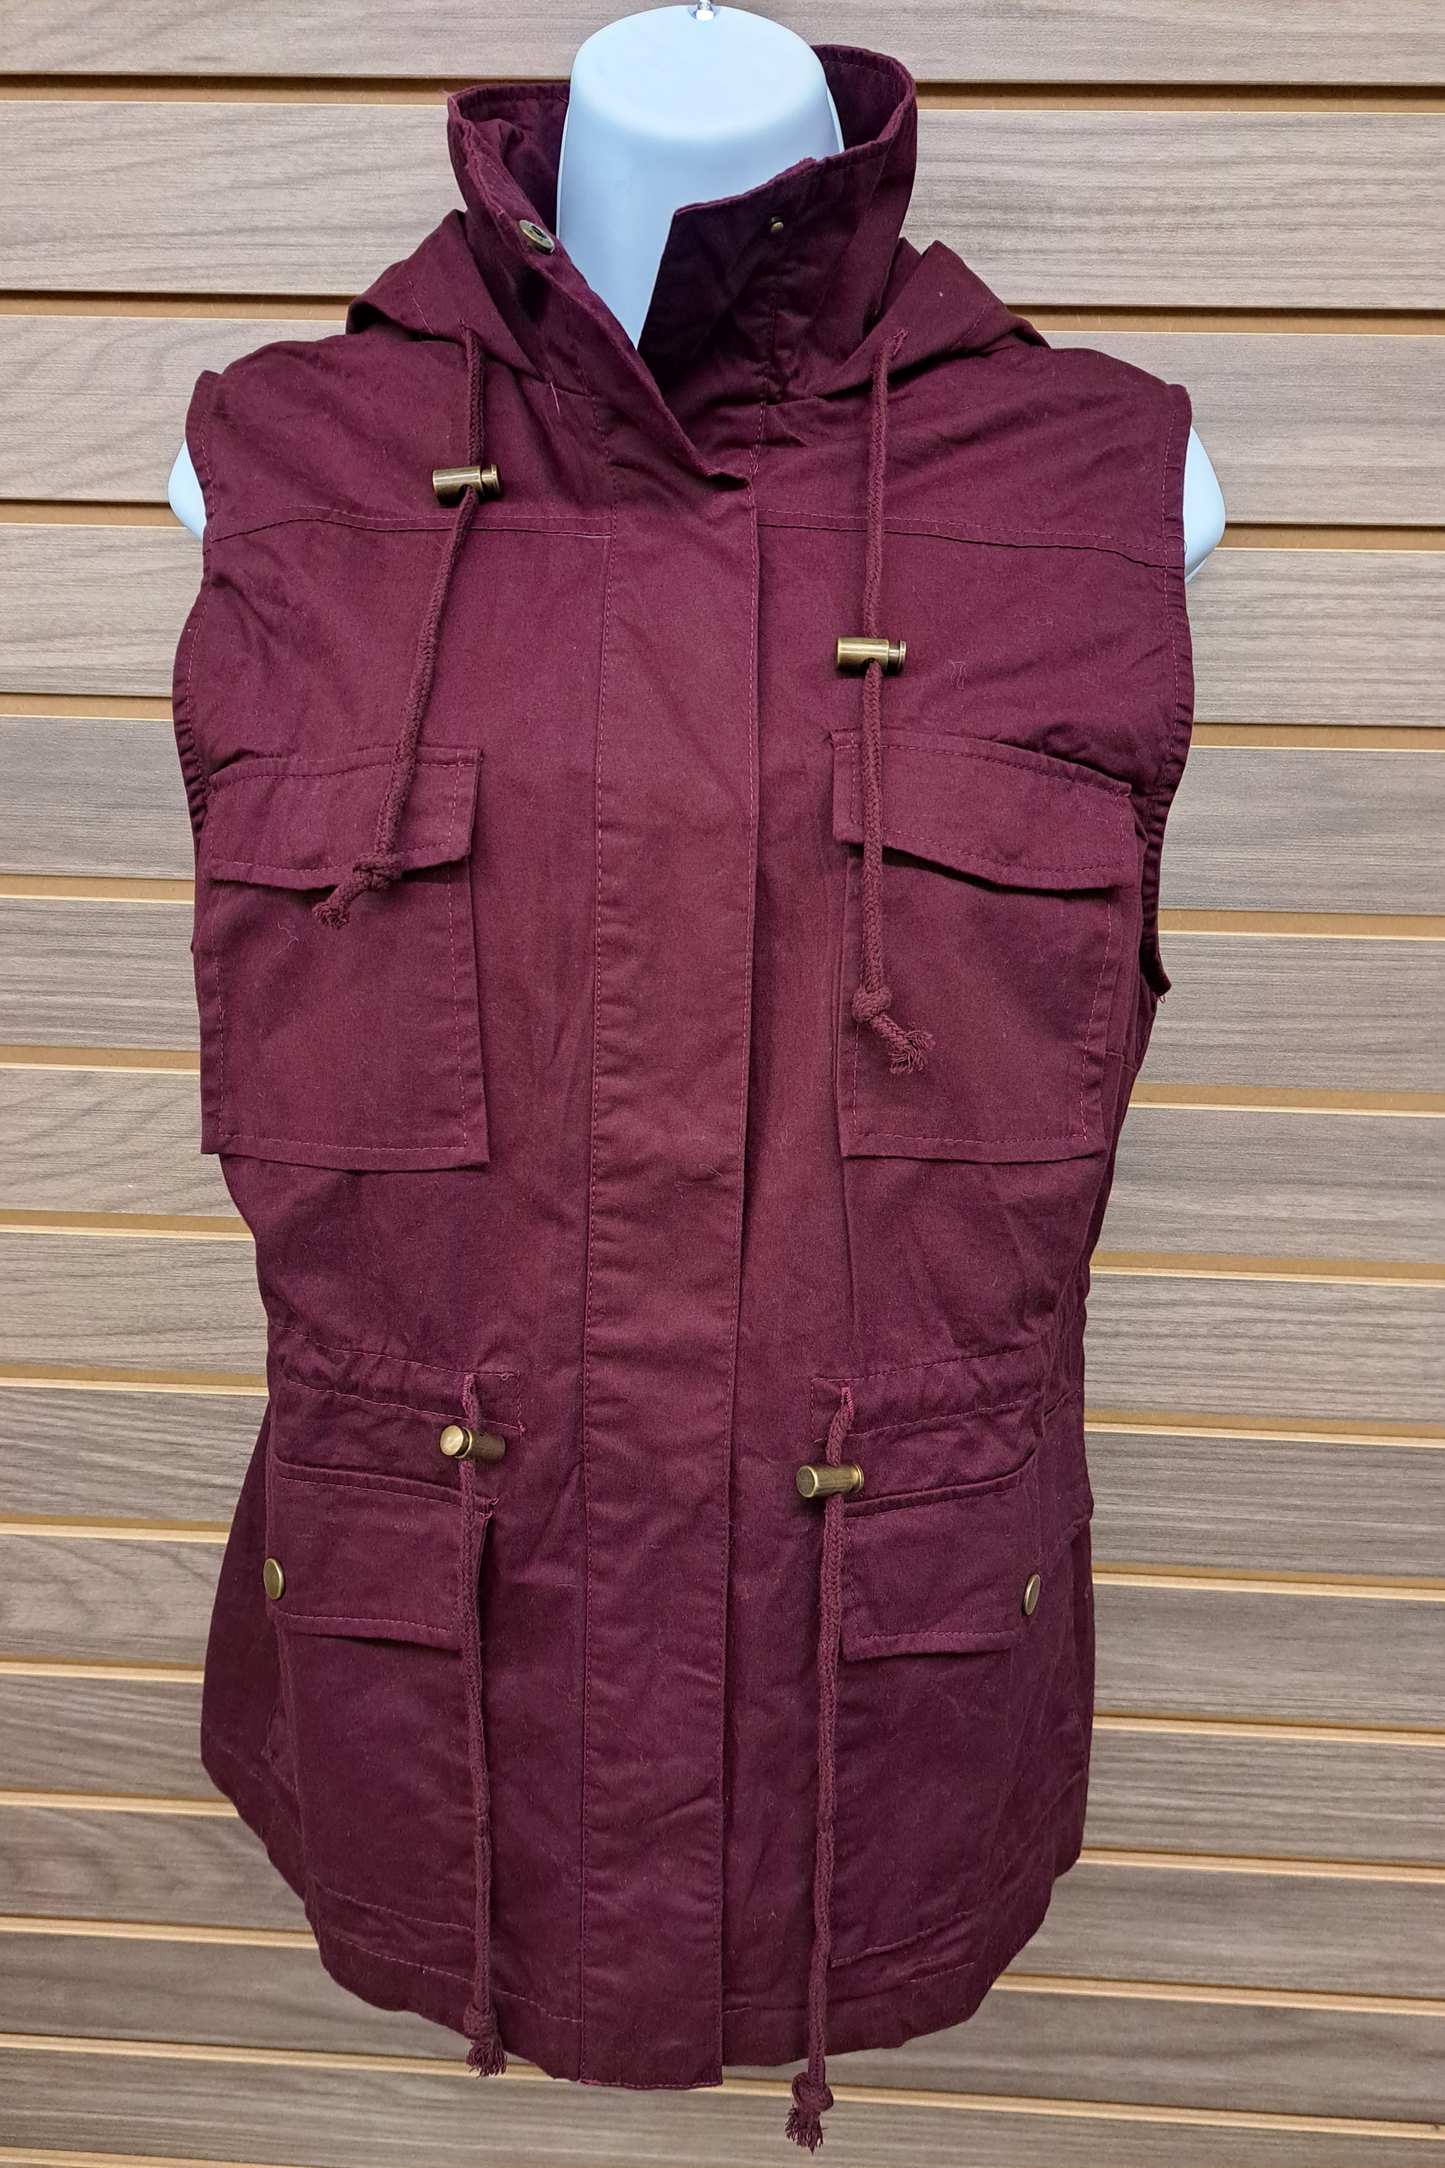 Burgundy pockets hoodie vest with snaps/ties